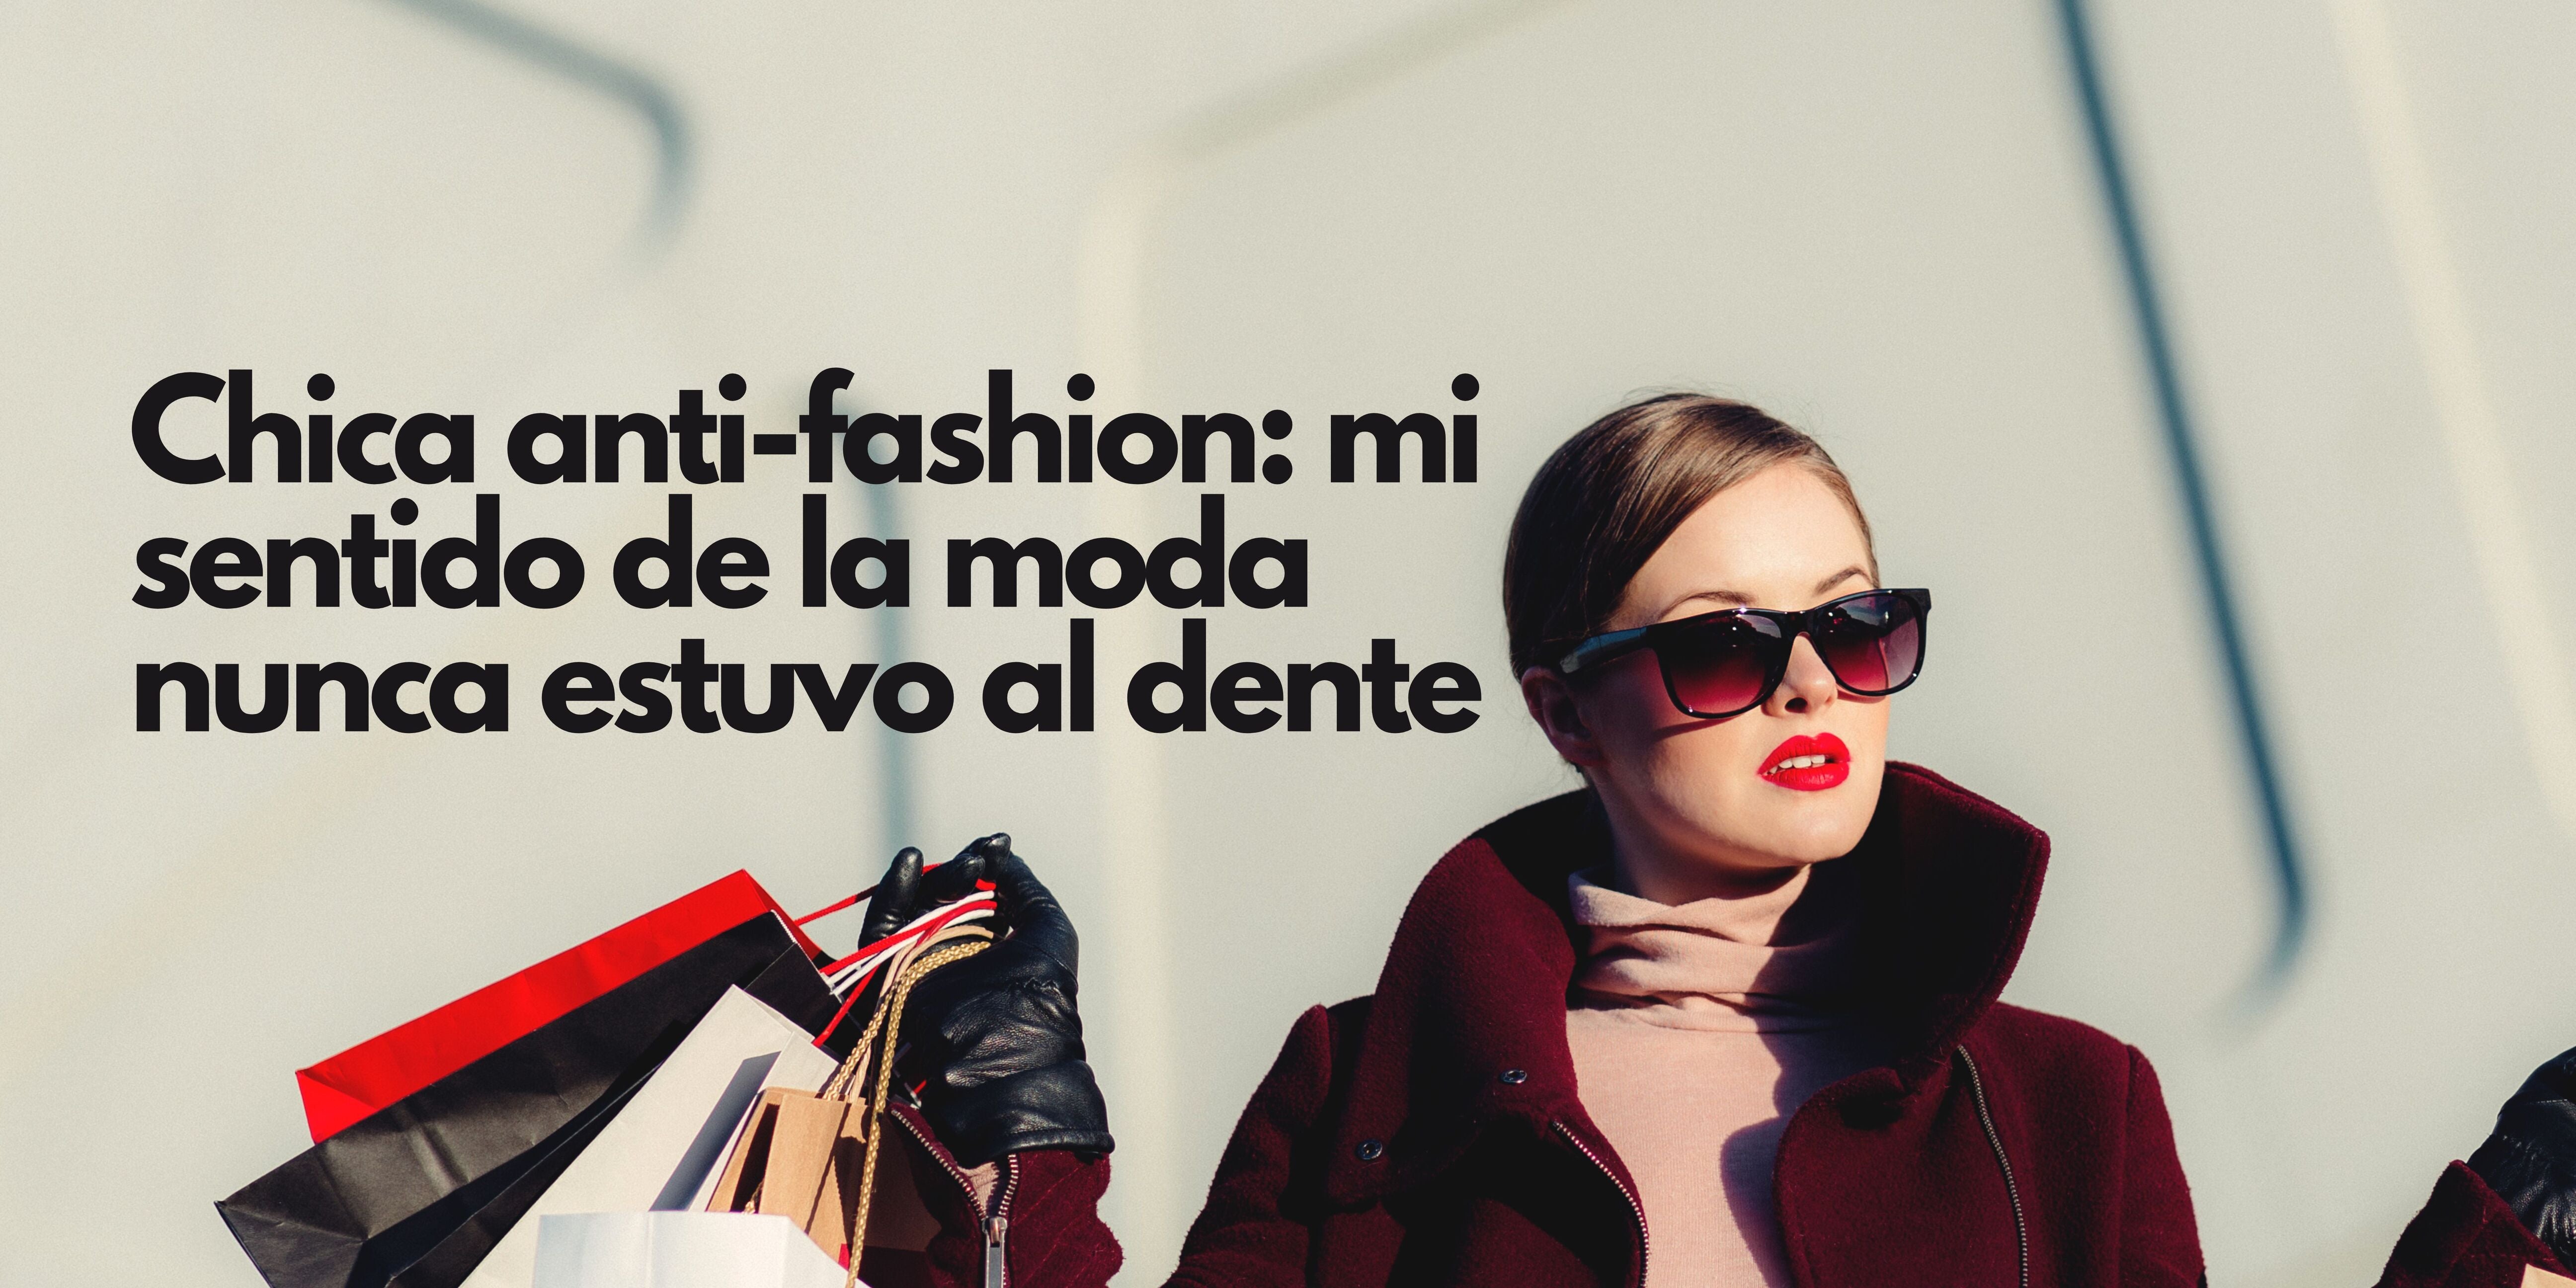 Chica anti-fashion: mi sentido de la moda nunca estuvo al dente